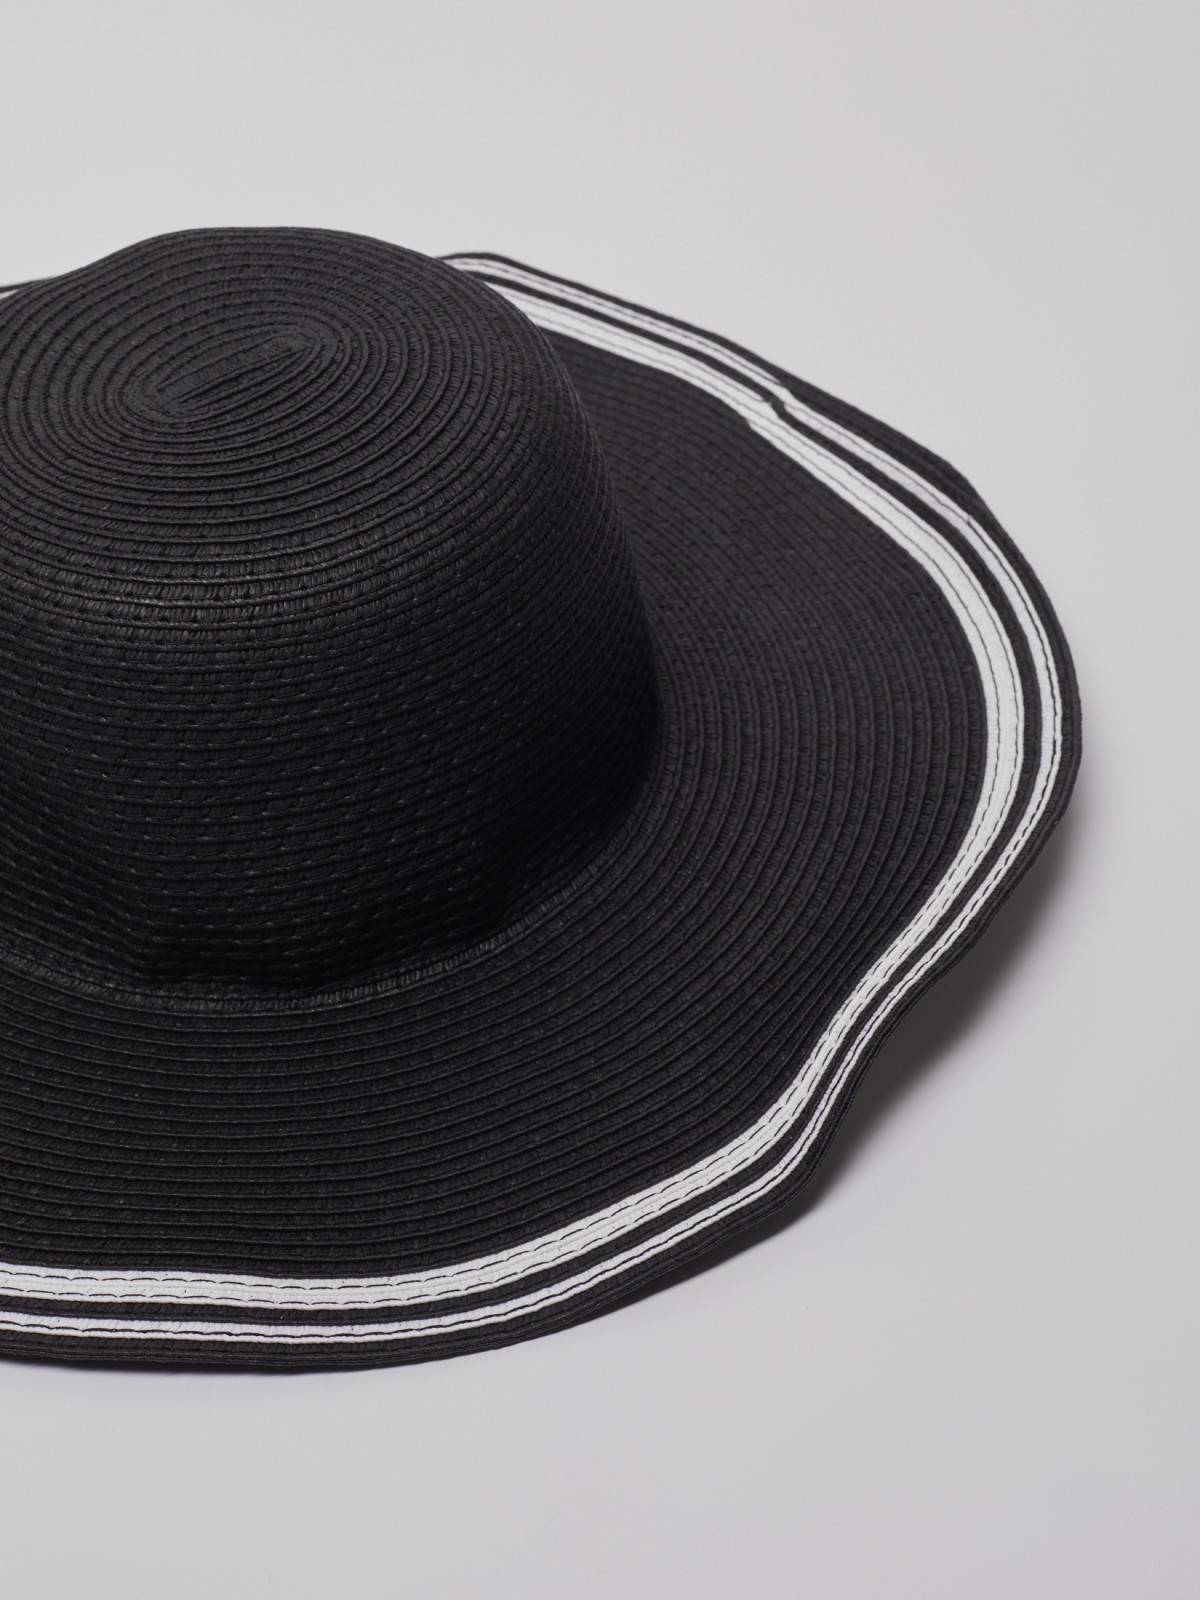 Шляпа, кепка zolla 222239F59165, цвет черный, размер 54-58 - фото 2